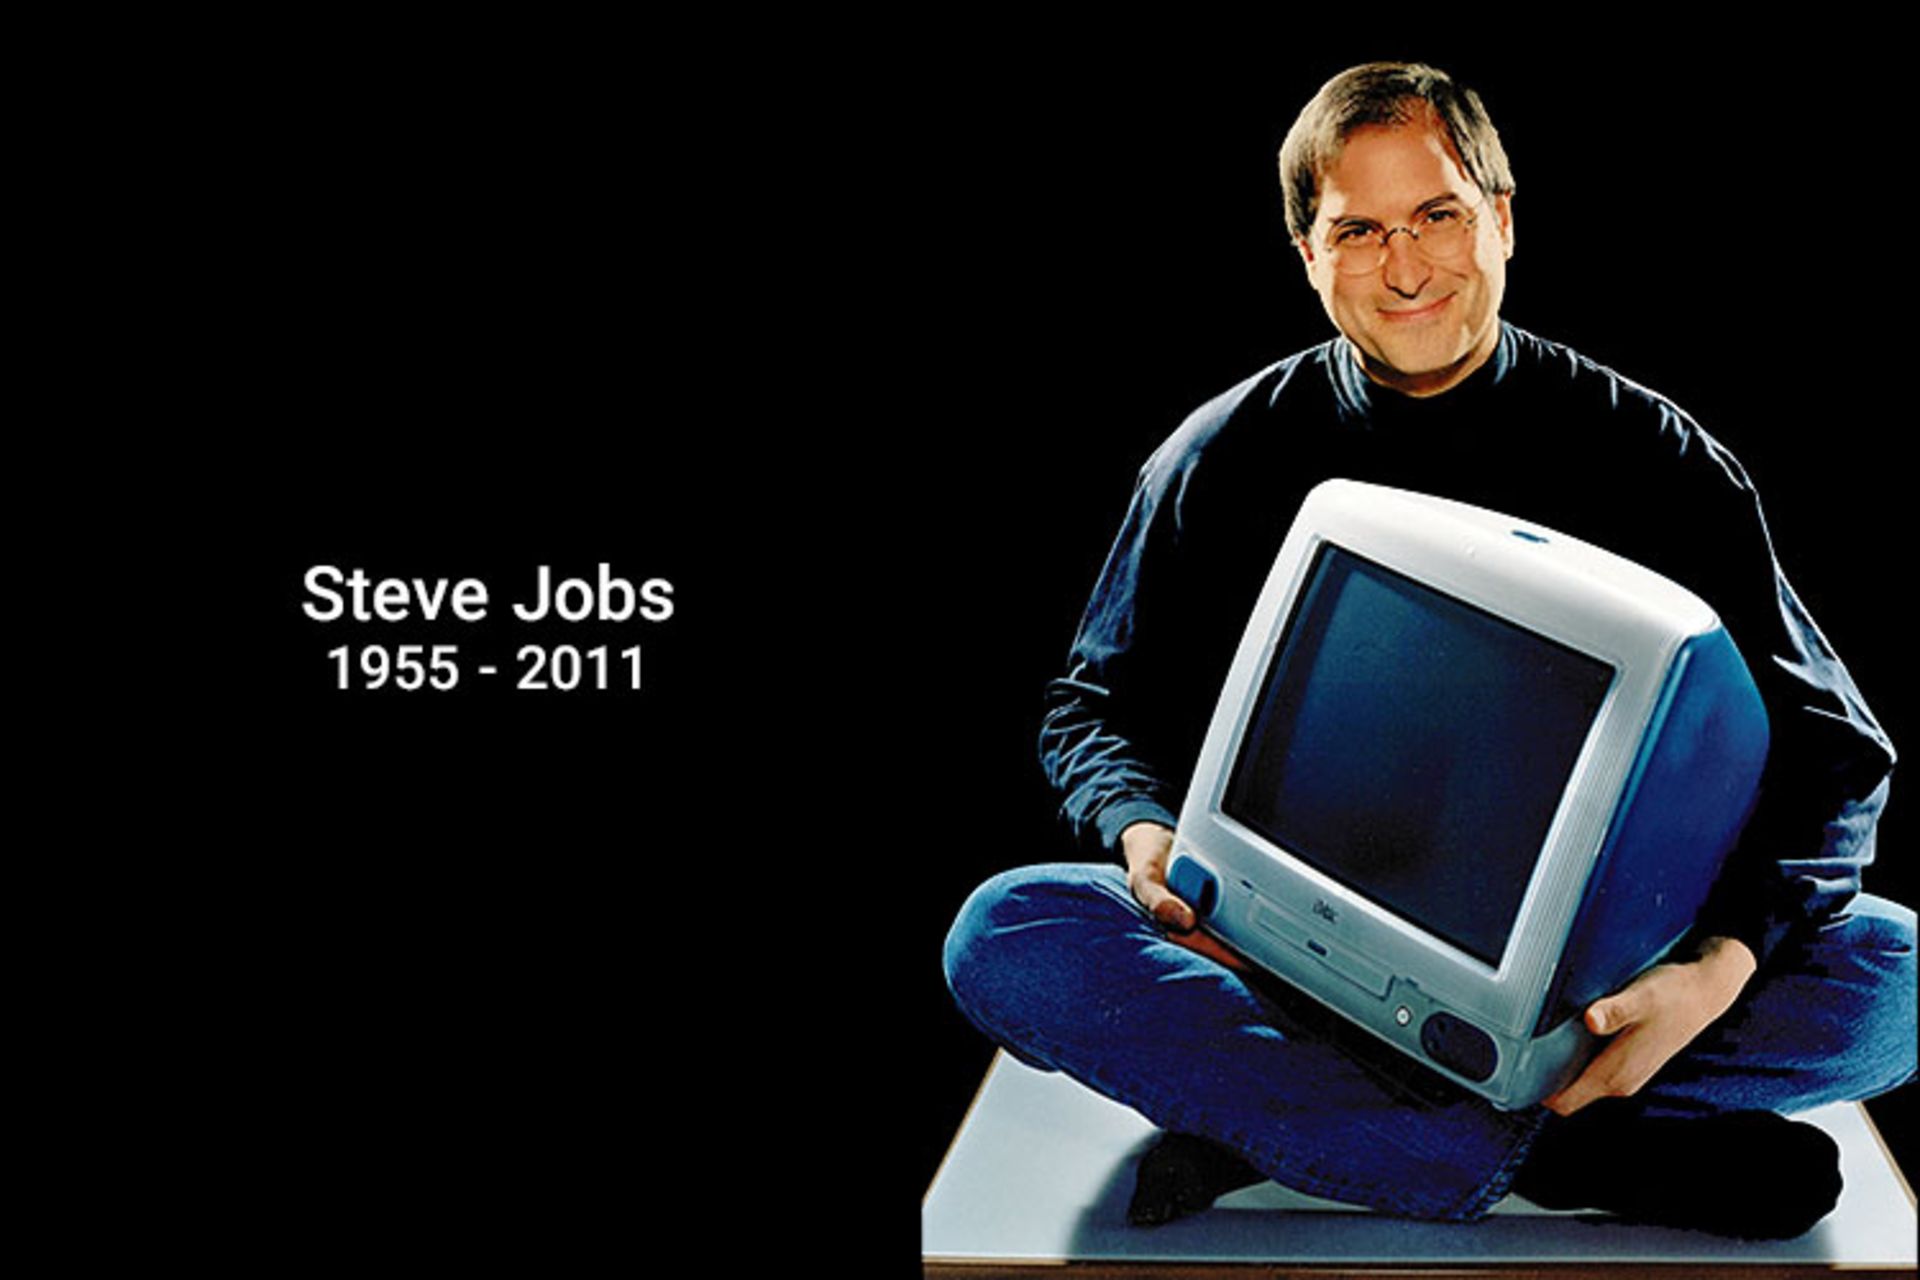 مرجع متخصصين ايران استيو جابز / Steve Jobs